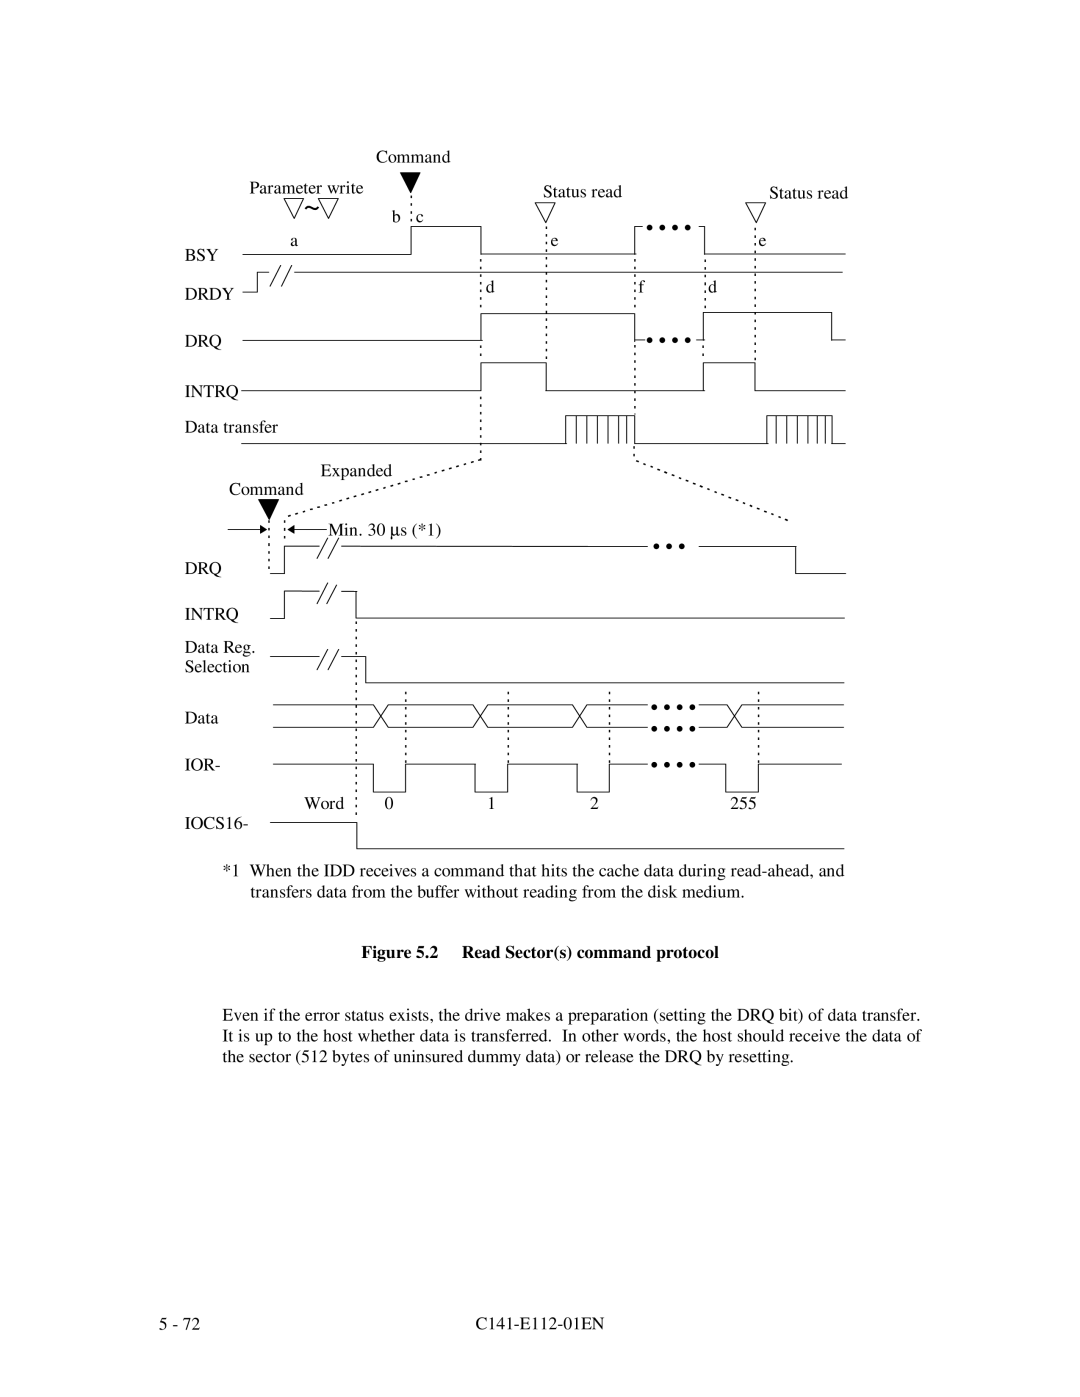 Fujitsu MPG3XXXAH manual 2 Read Sectors command protocol 